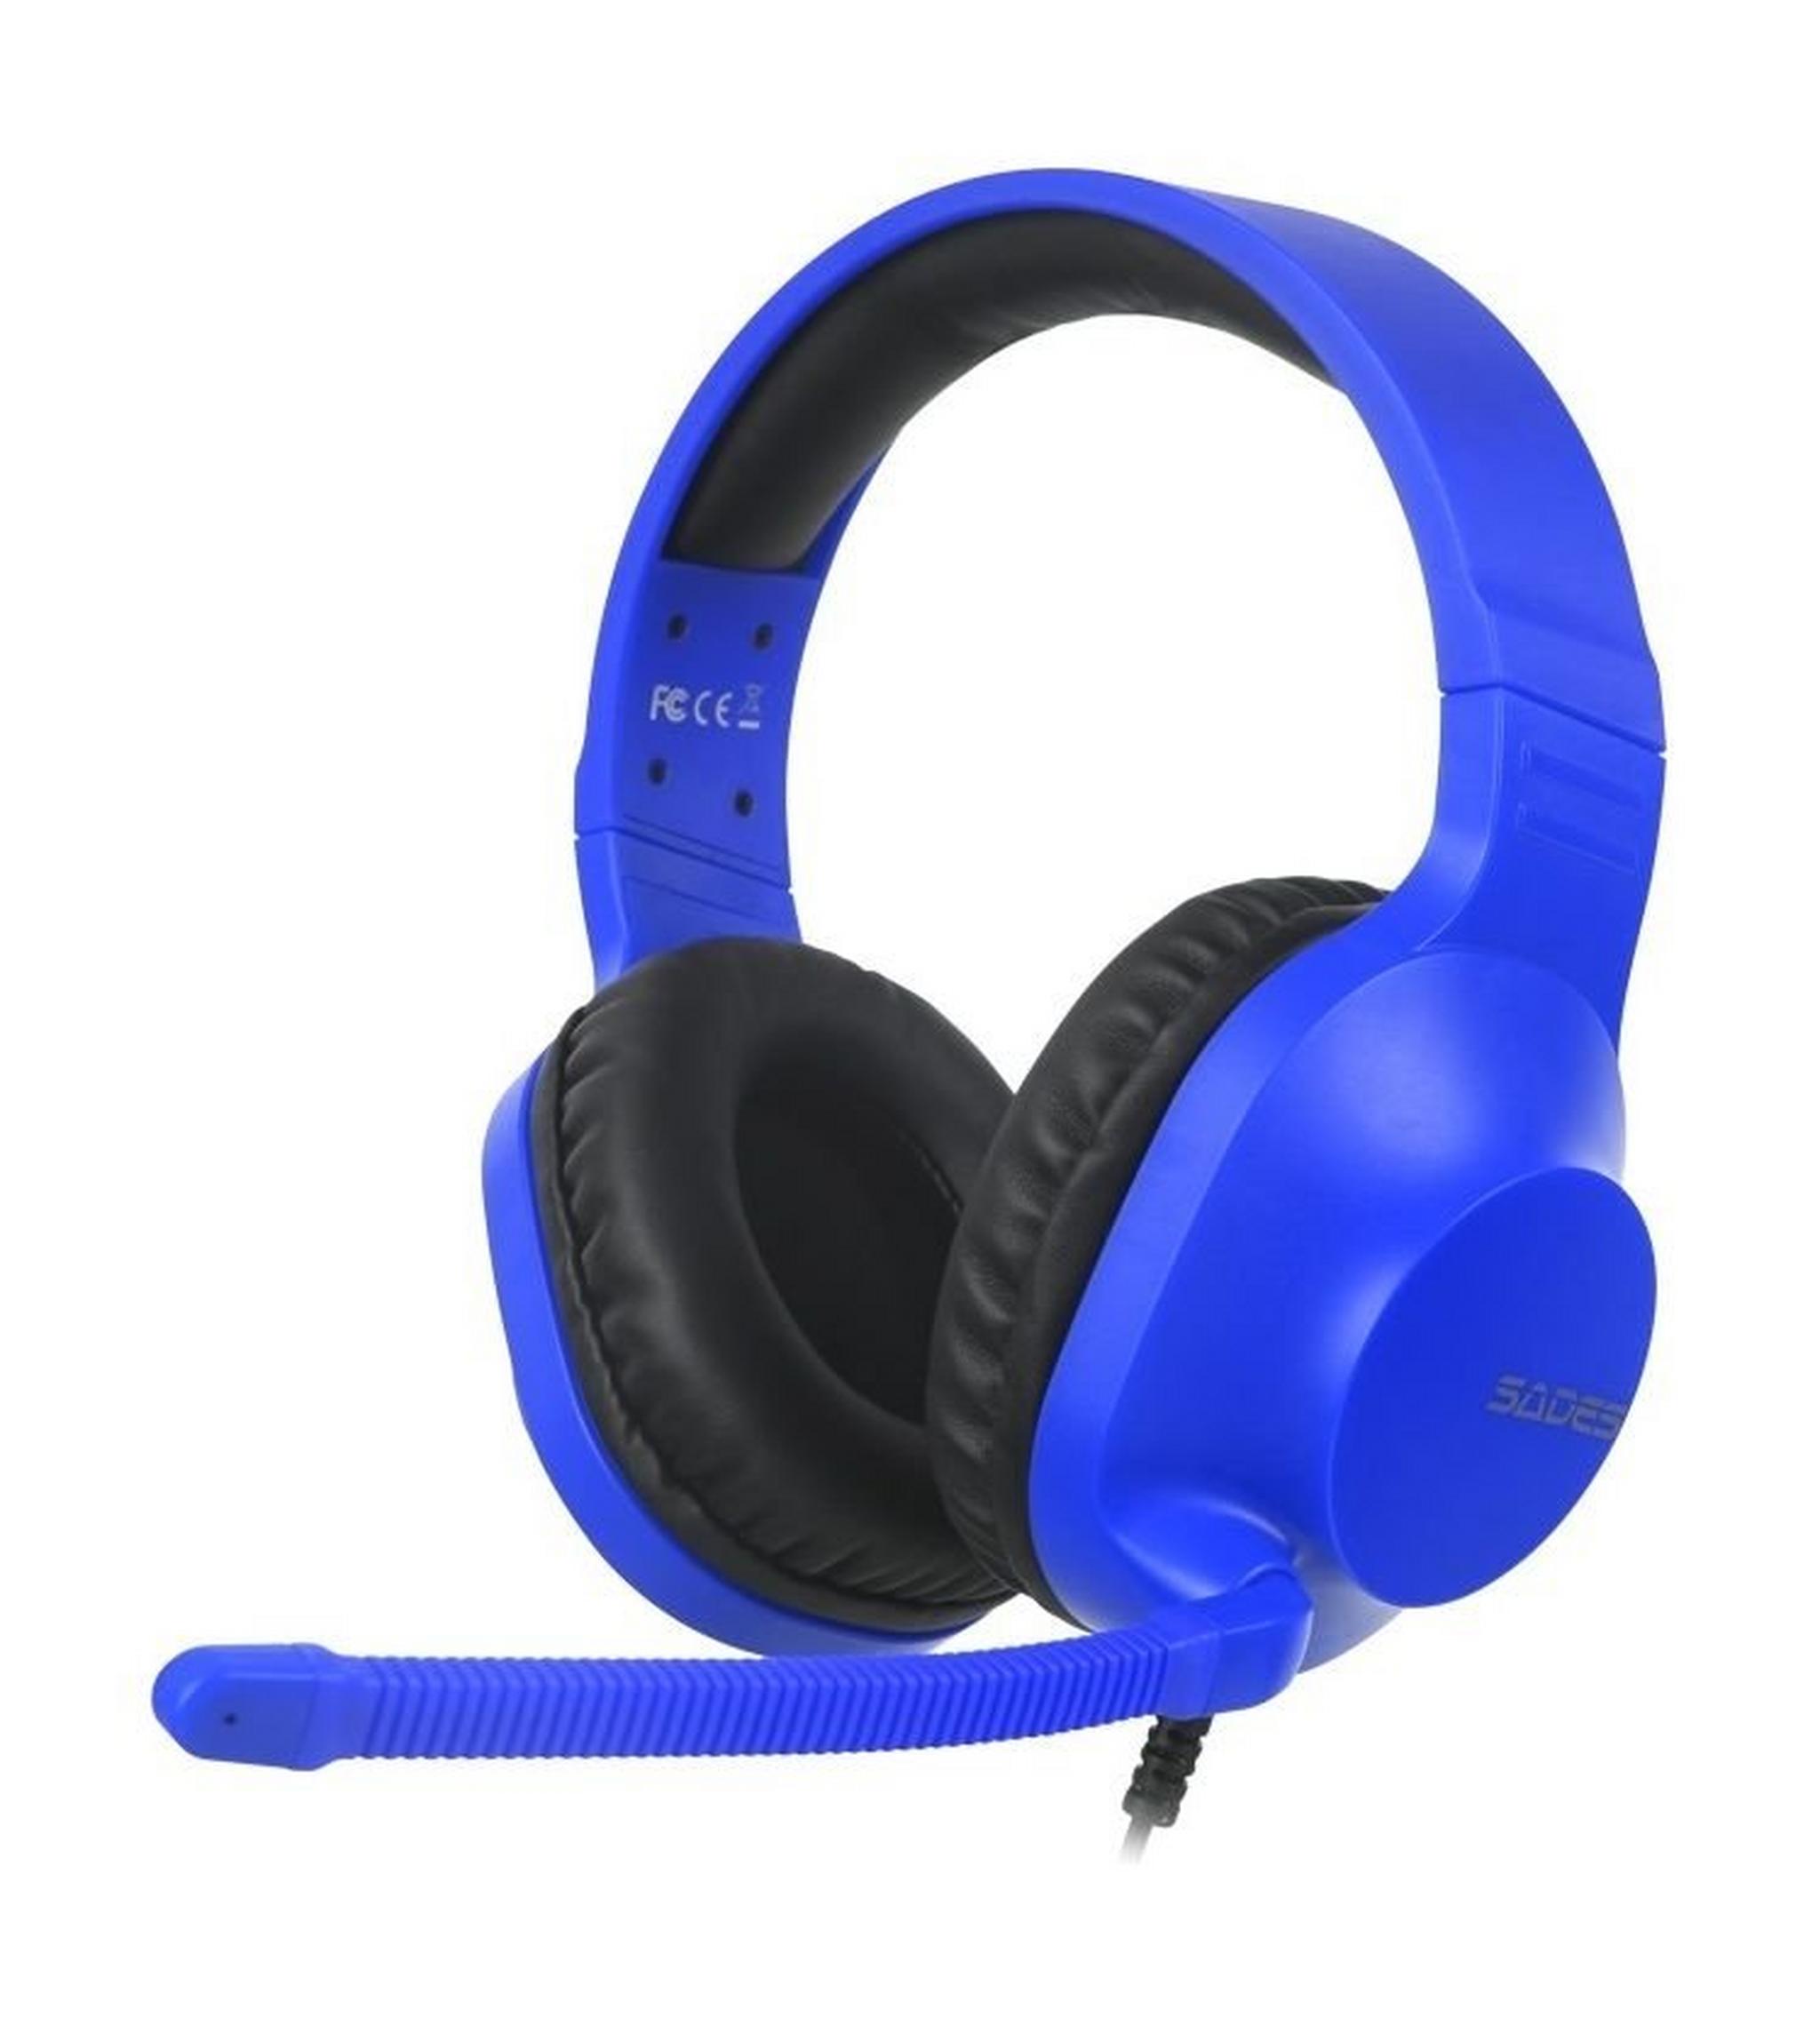 Sades Spirits Wired Gaming Headset - Blue